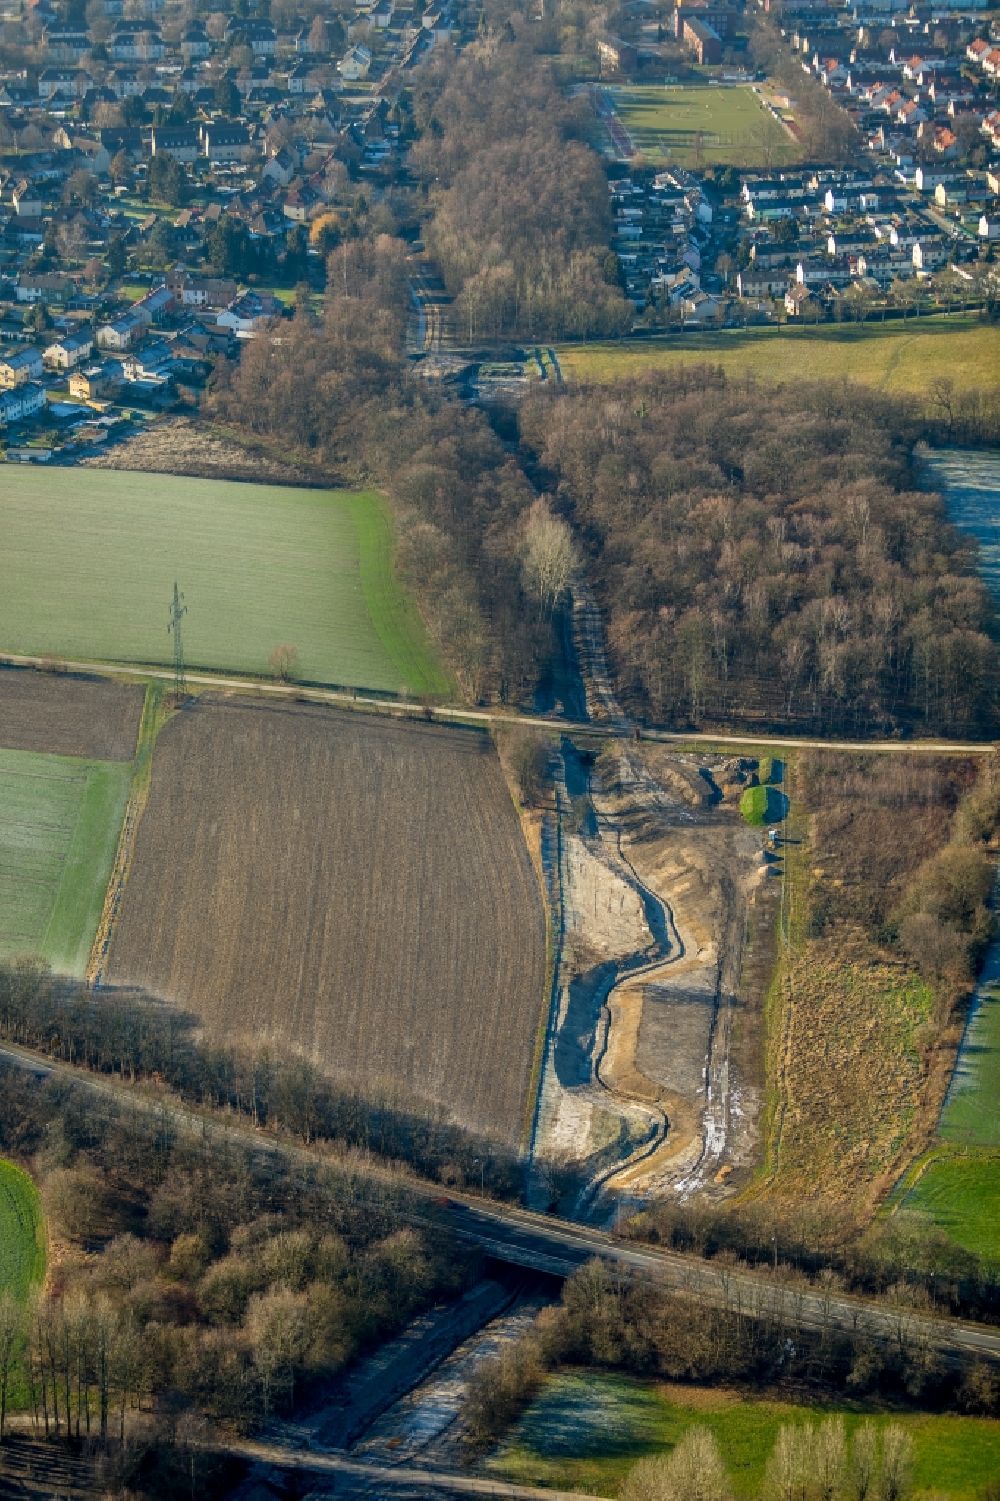 Luftbild Dortmund - Melorationsgraben Kirchderner Graben und Kanäle auf landwirtschaftlichen Feldern in Dortmund im Bundesland Nordrhein-Westfalen, Deutschland